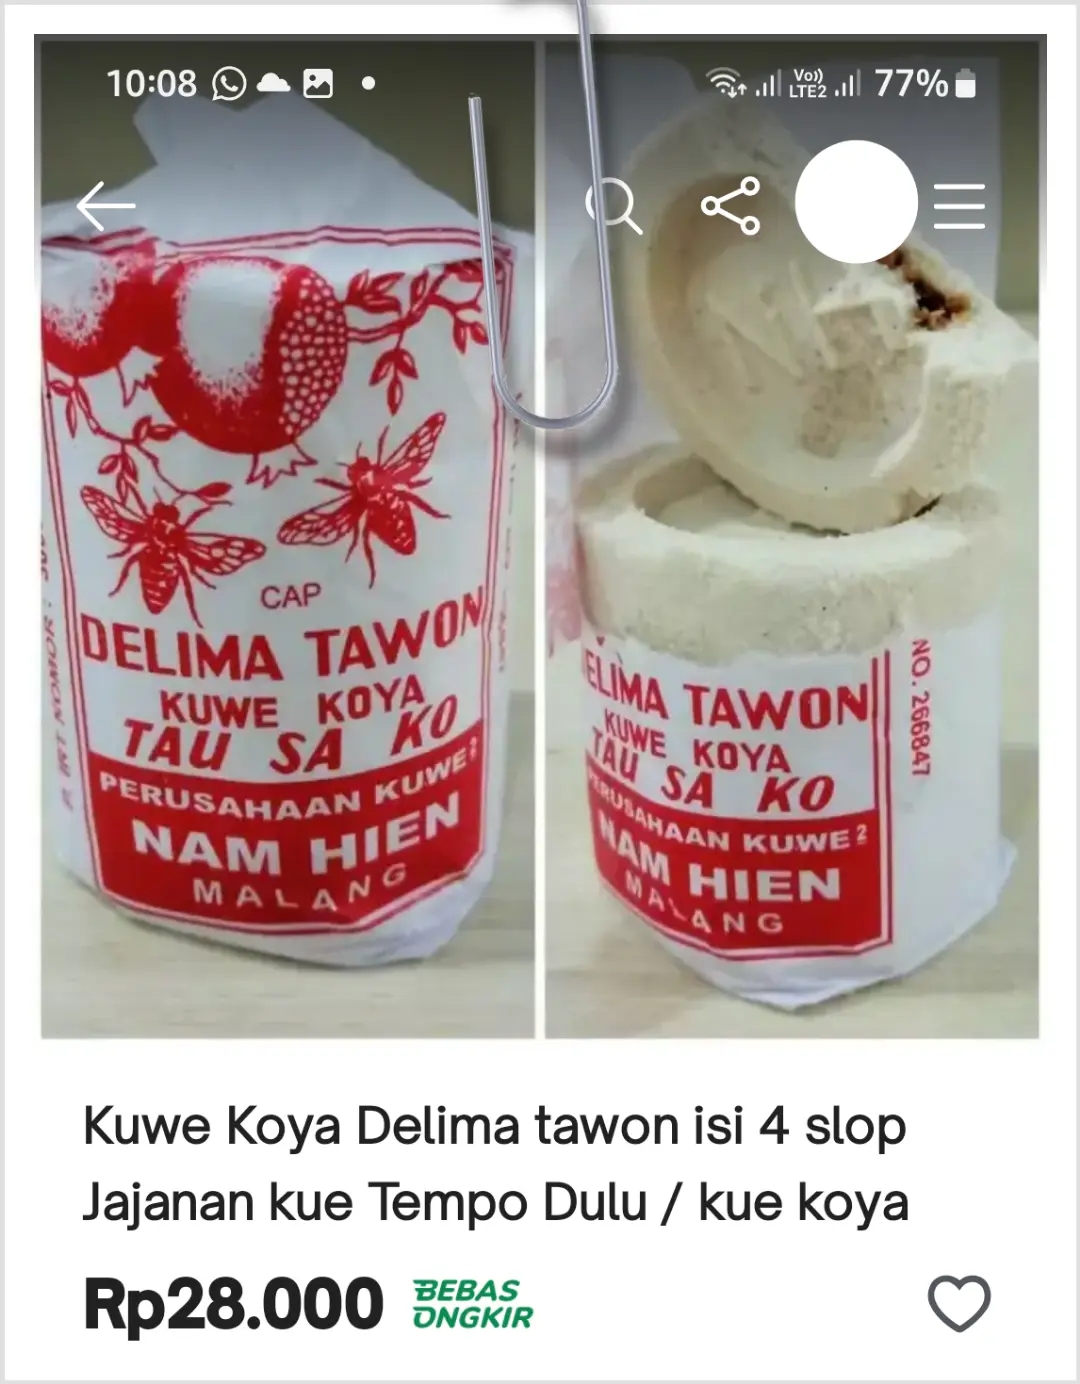 Kue koya klasik dari Malang cap Delima Tawon 